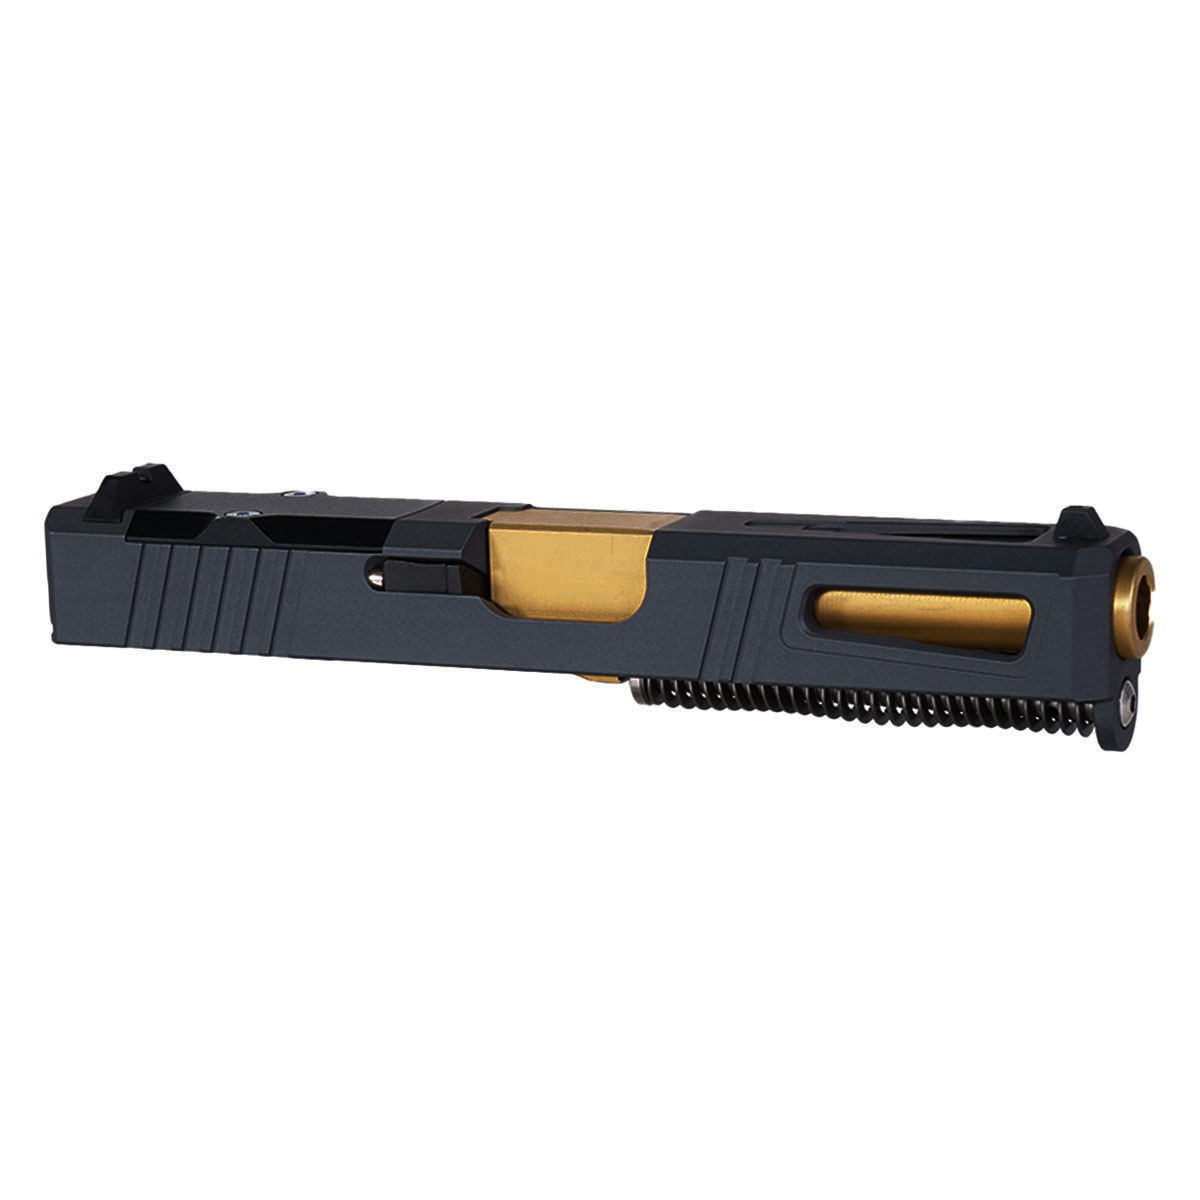 DD 'The Juno' 9mm Complete Slide Kit - Glock 19 Gen 1-3 Compatible